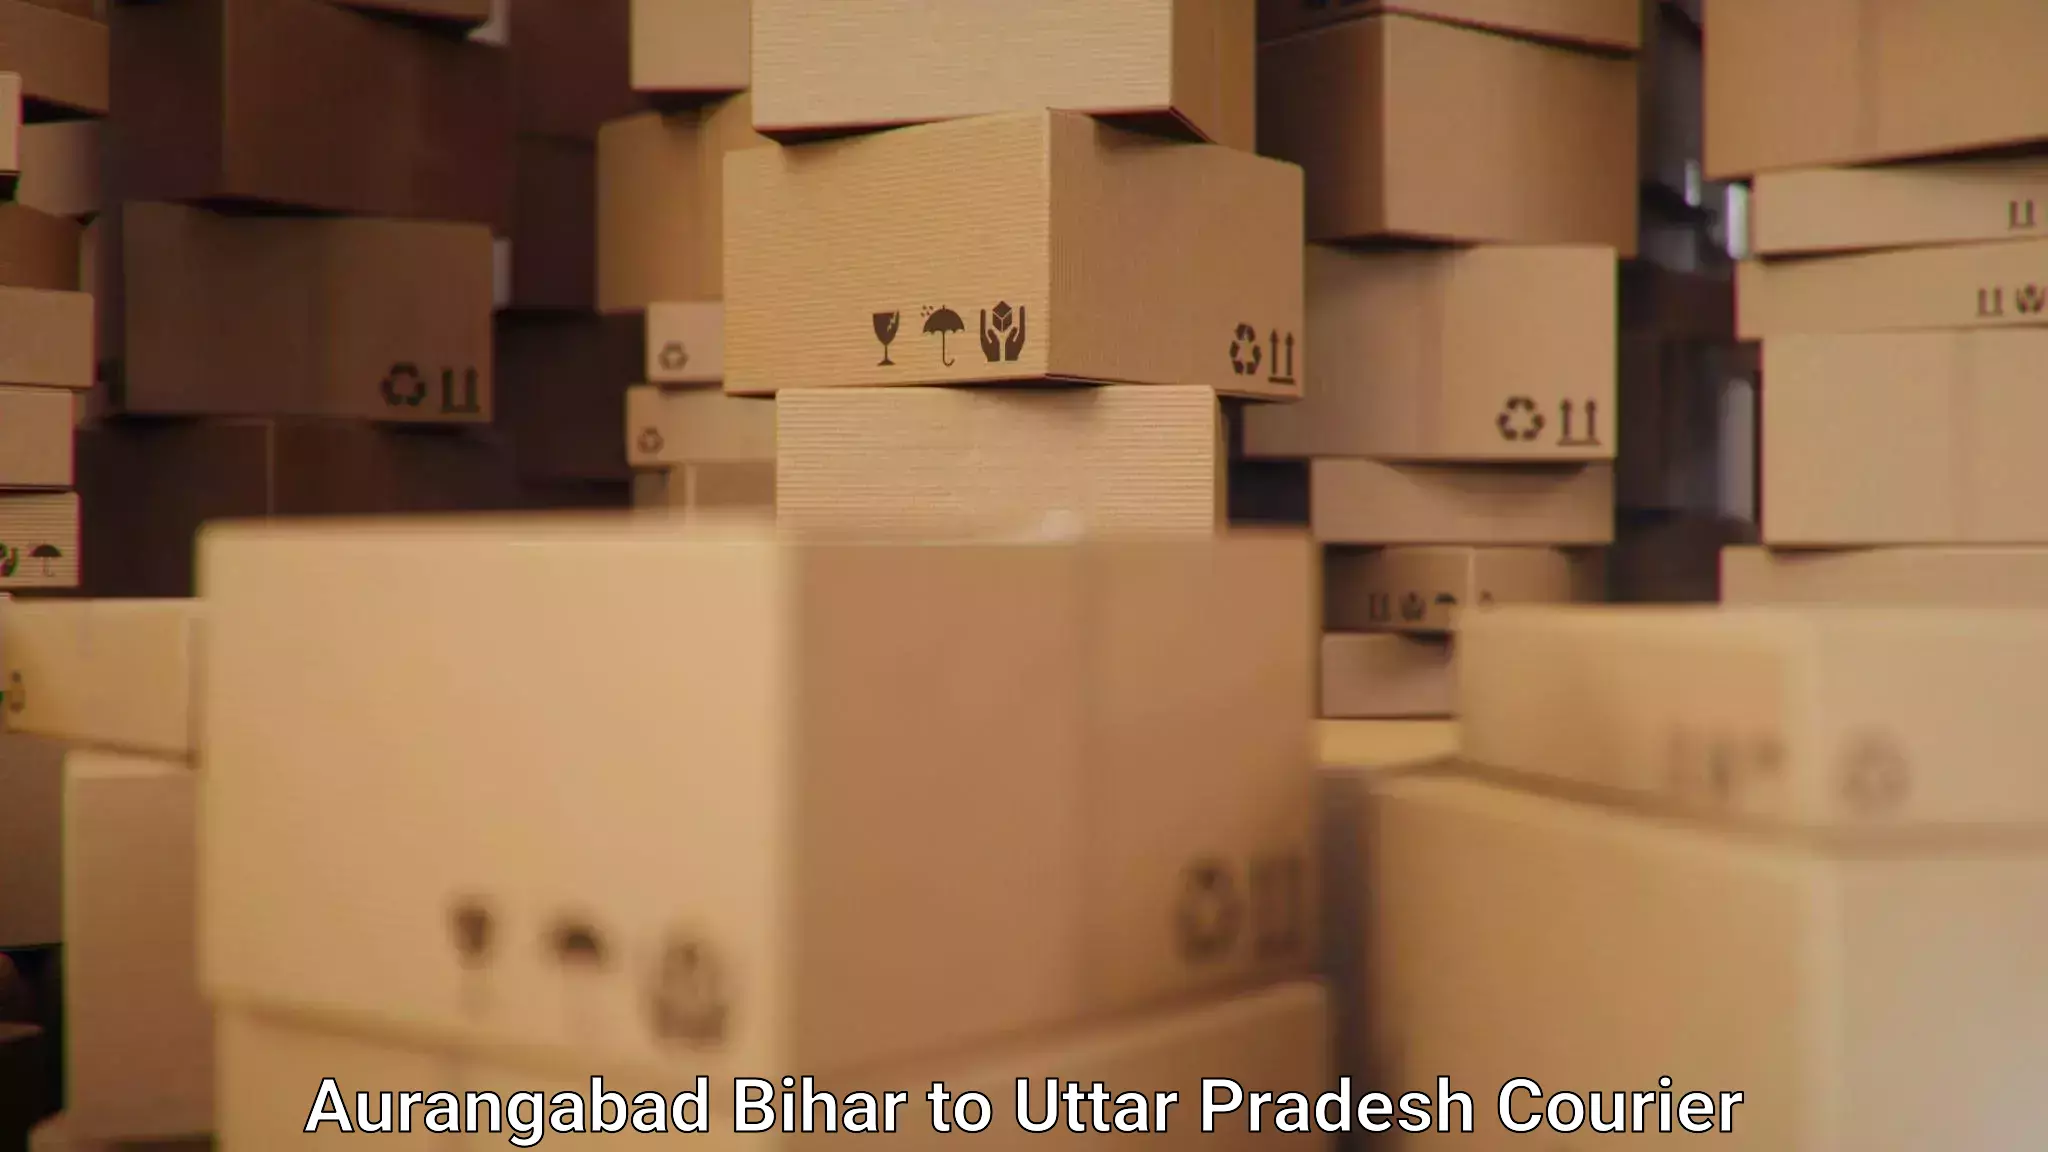 Parcel service for businesses Aurangabad Bihar to IIT Varanasi